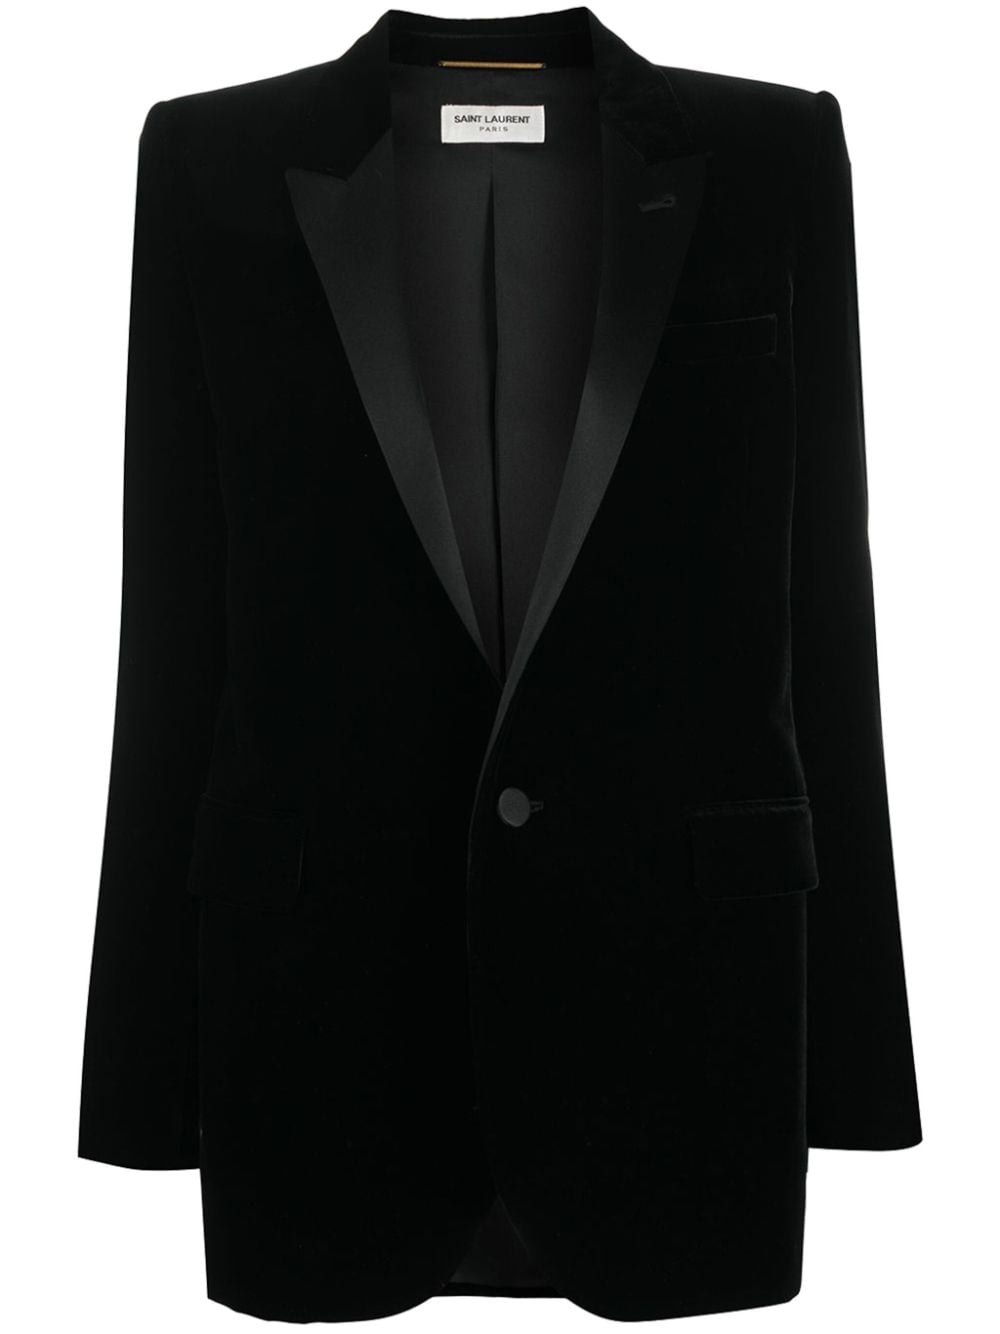 Image 1 of Saint Laurent single-breasted velvet tuxedo jacket